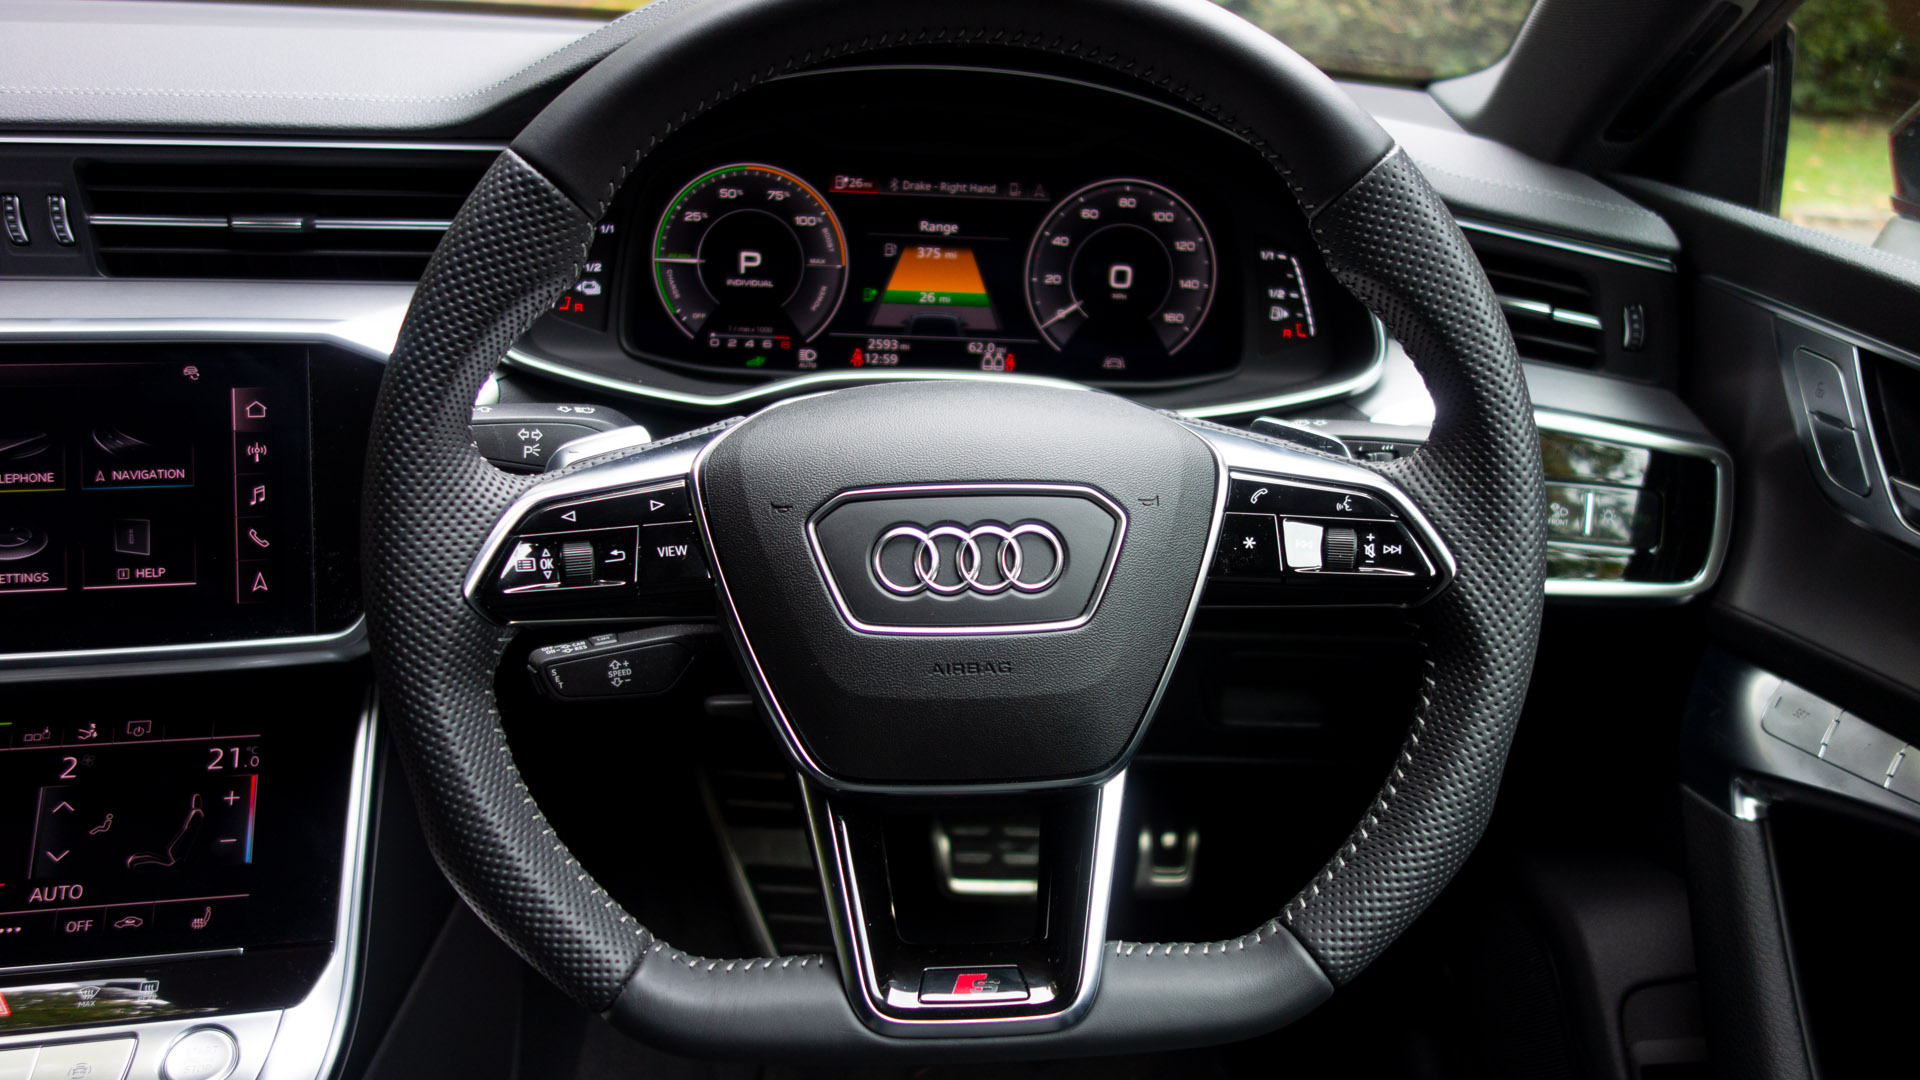 Audi A7 TFSIe steering wheel